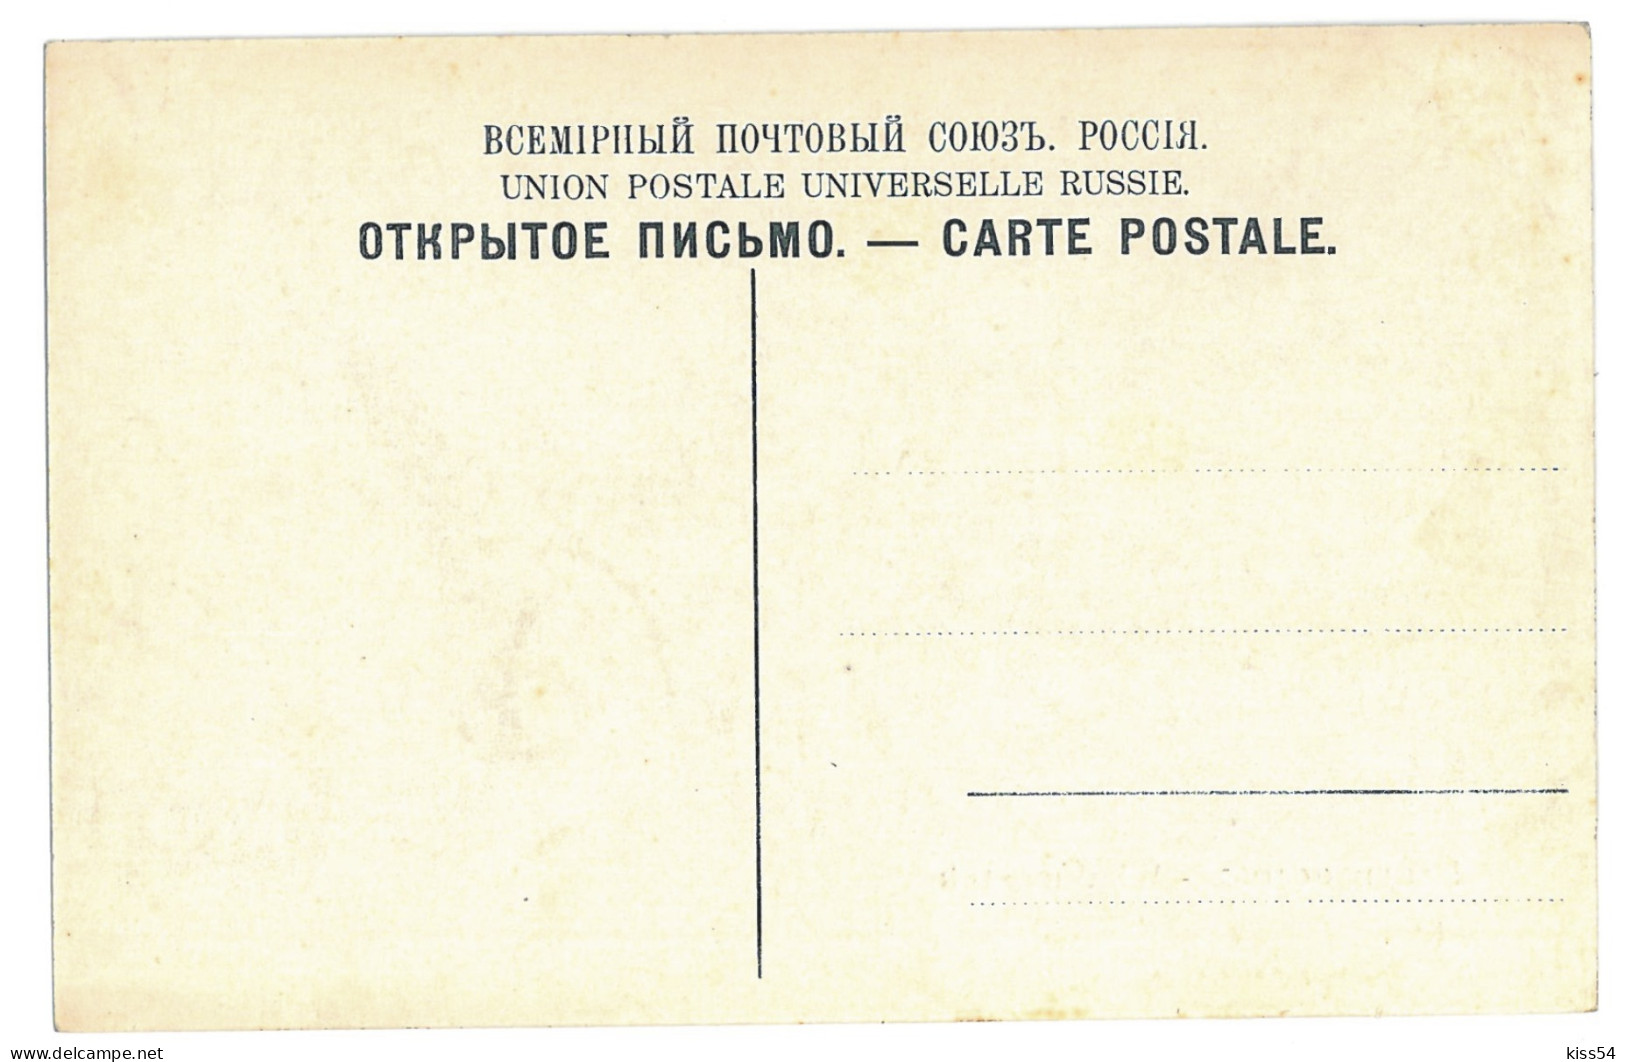 RUS 86 - 11177 VLADIVOSTOK, Harbor, Russia - Old Postcard - Unused - Russie